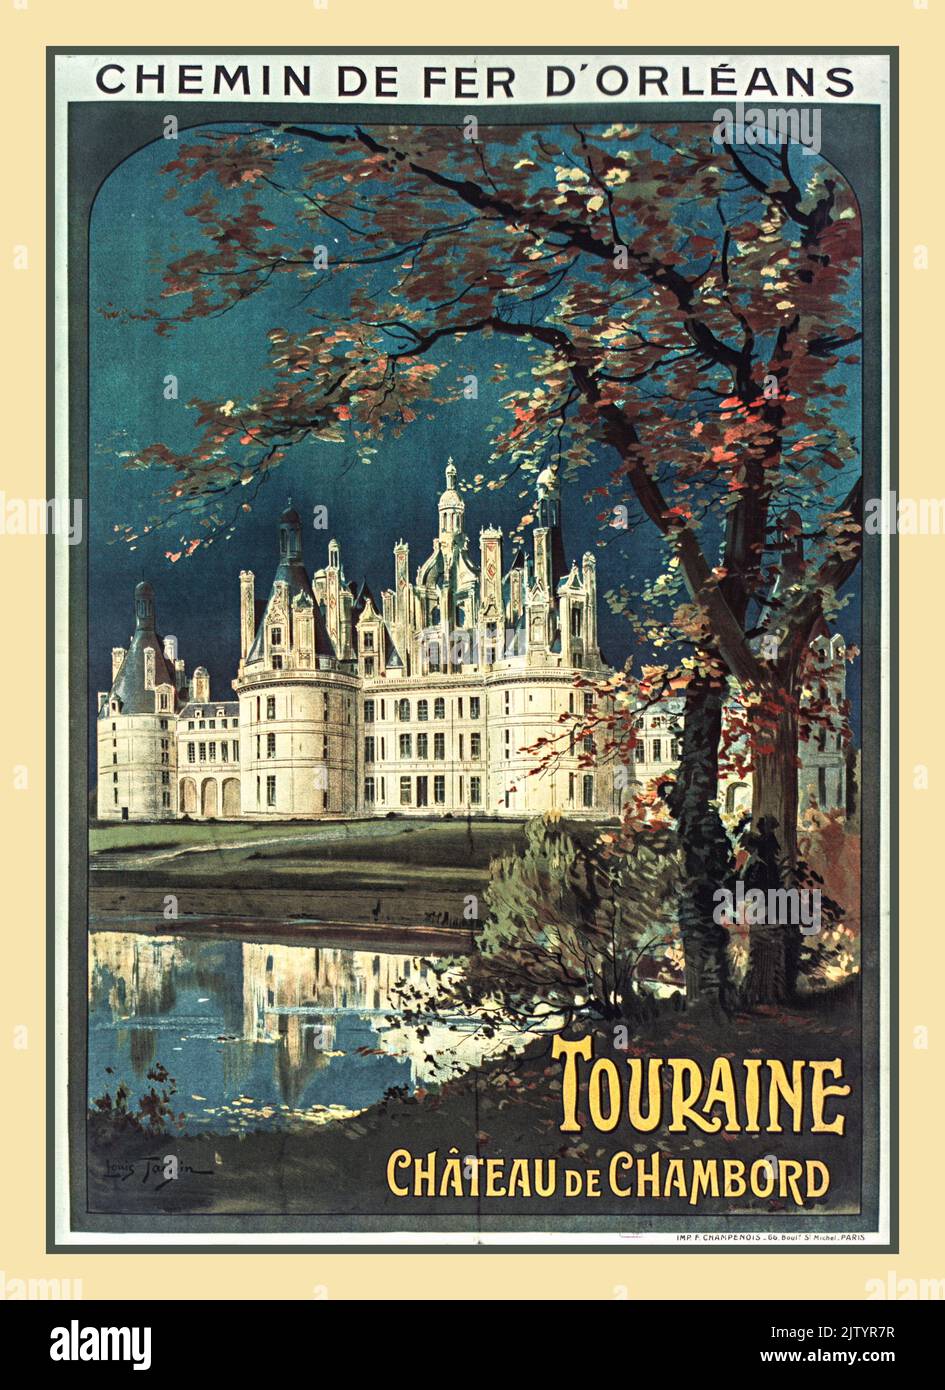 Vintage Chateau de Chambord Ferrovia francese Poster Chemin de fer d'Orléans Touraine - Tauzin Louis (1910) Francia Foto Stock